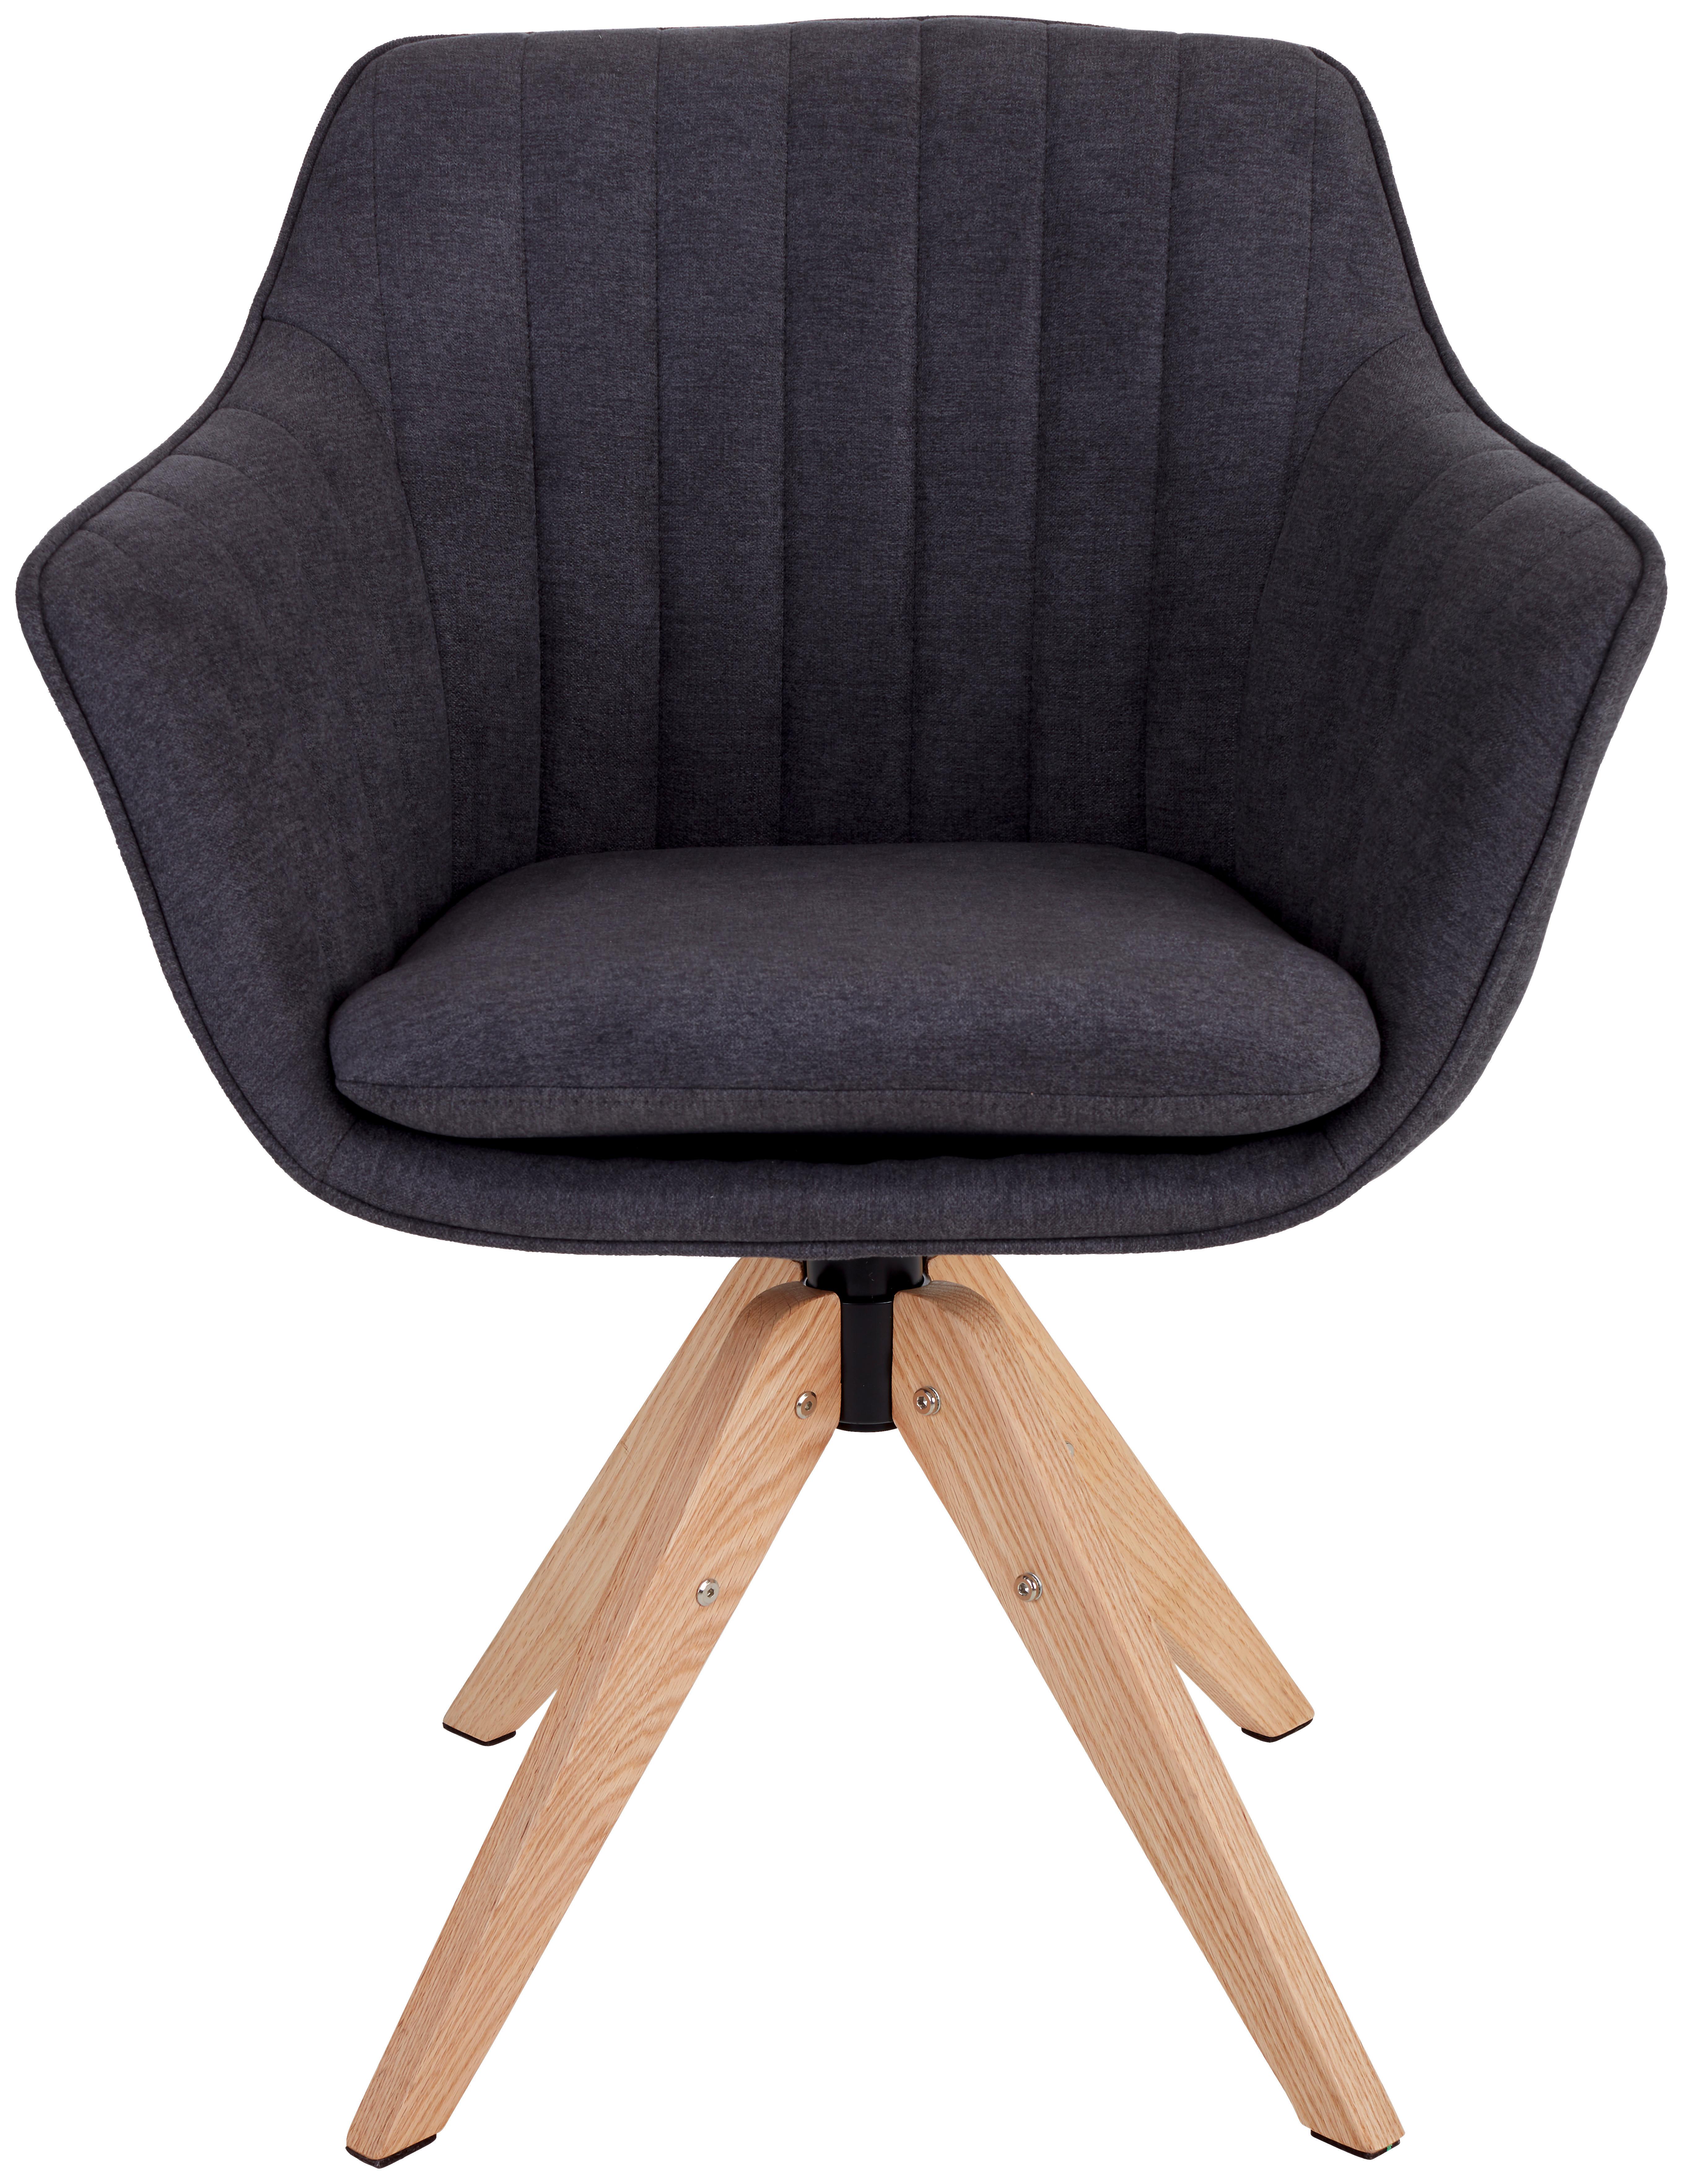 Armlehnstuhl Belluno Anthrazit mit drehbarer Sitzfläche - Eichefarben/Anthrazit, MODERN, Holz/Textil (60/88/57,5cm) - MID.YOU